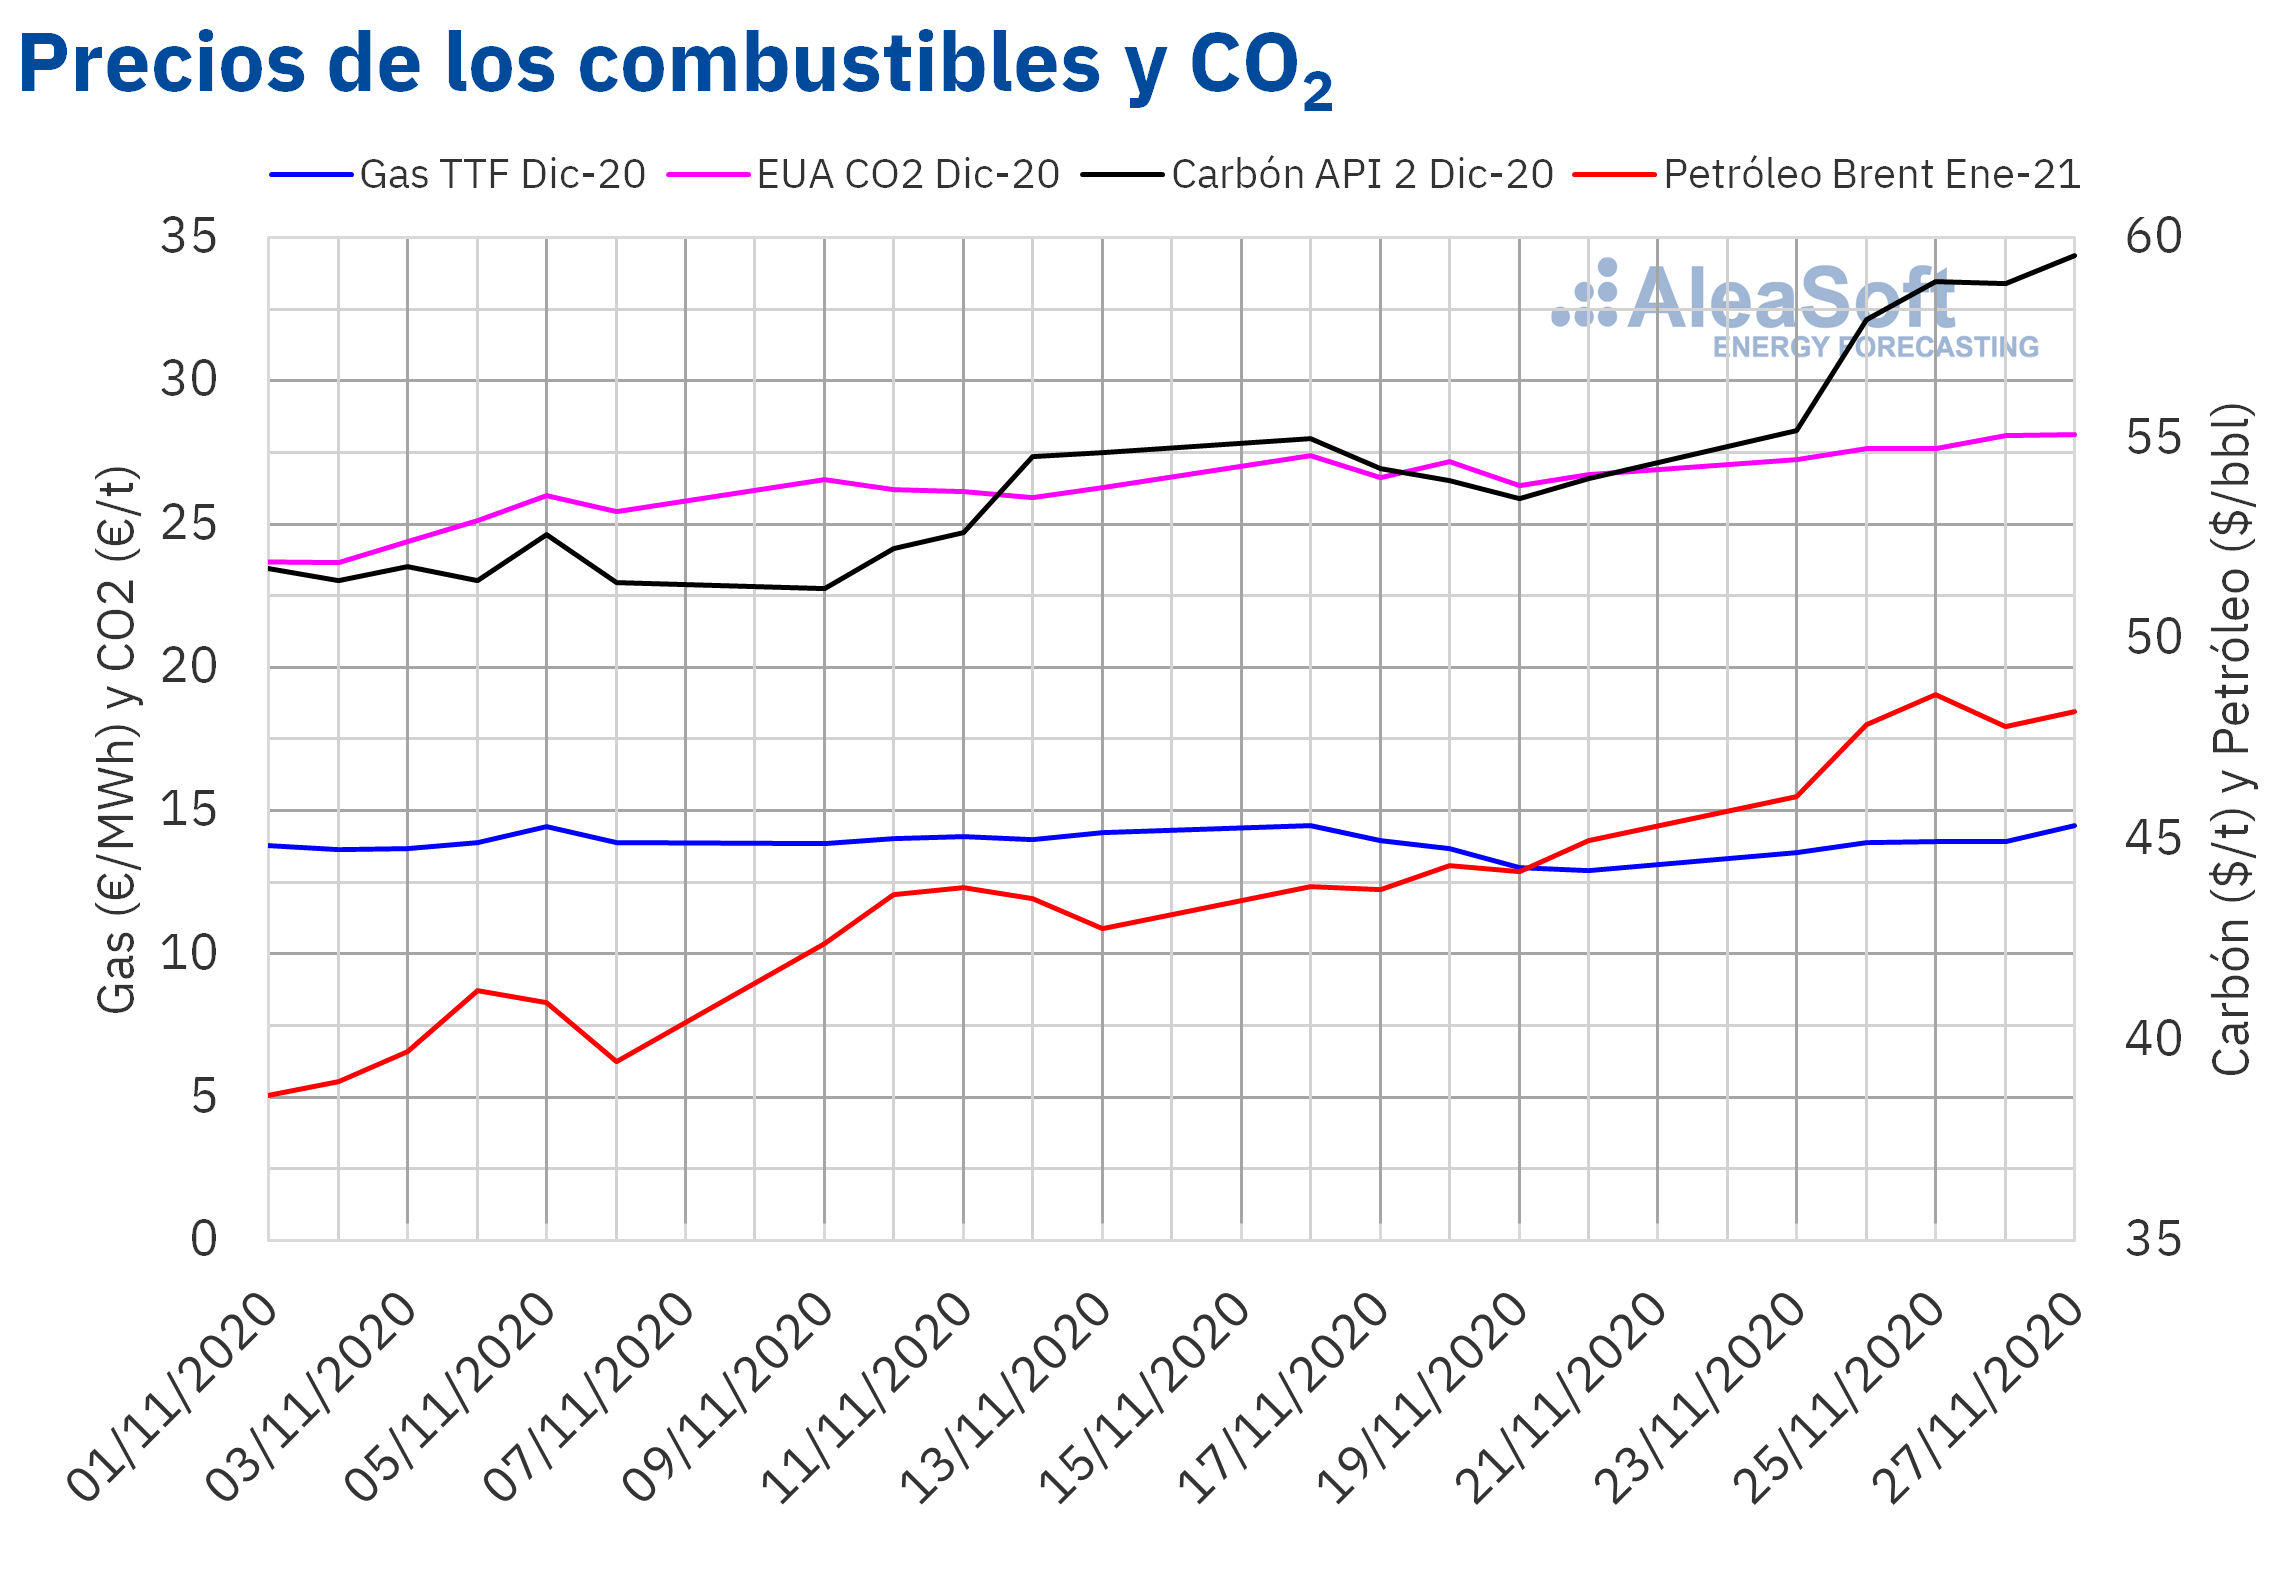 AleaSoft - Precios de gas, carbón Brent y CO2